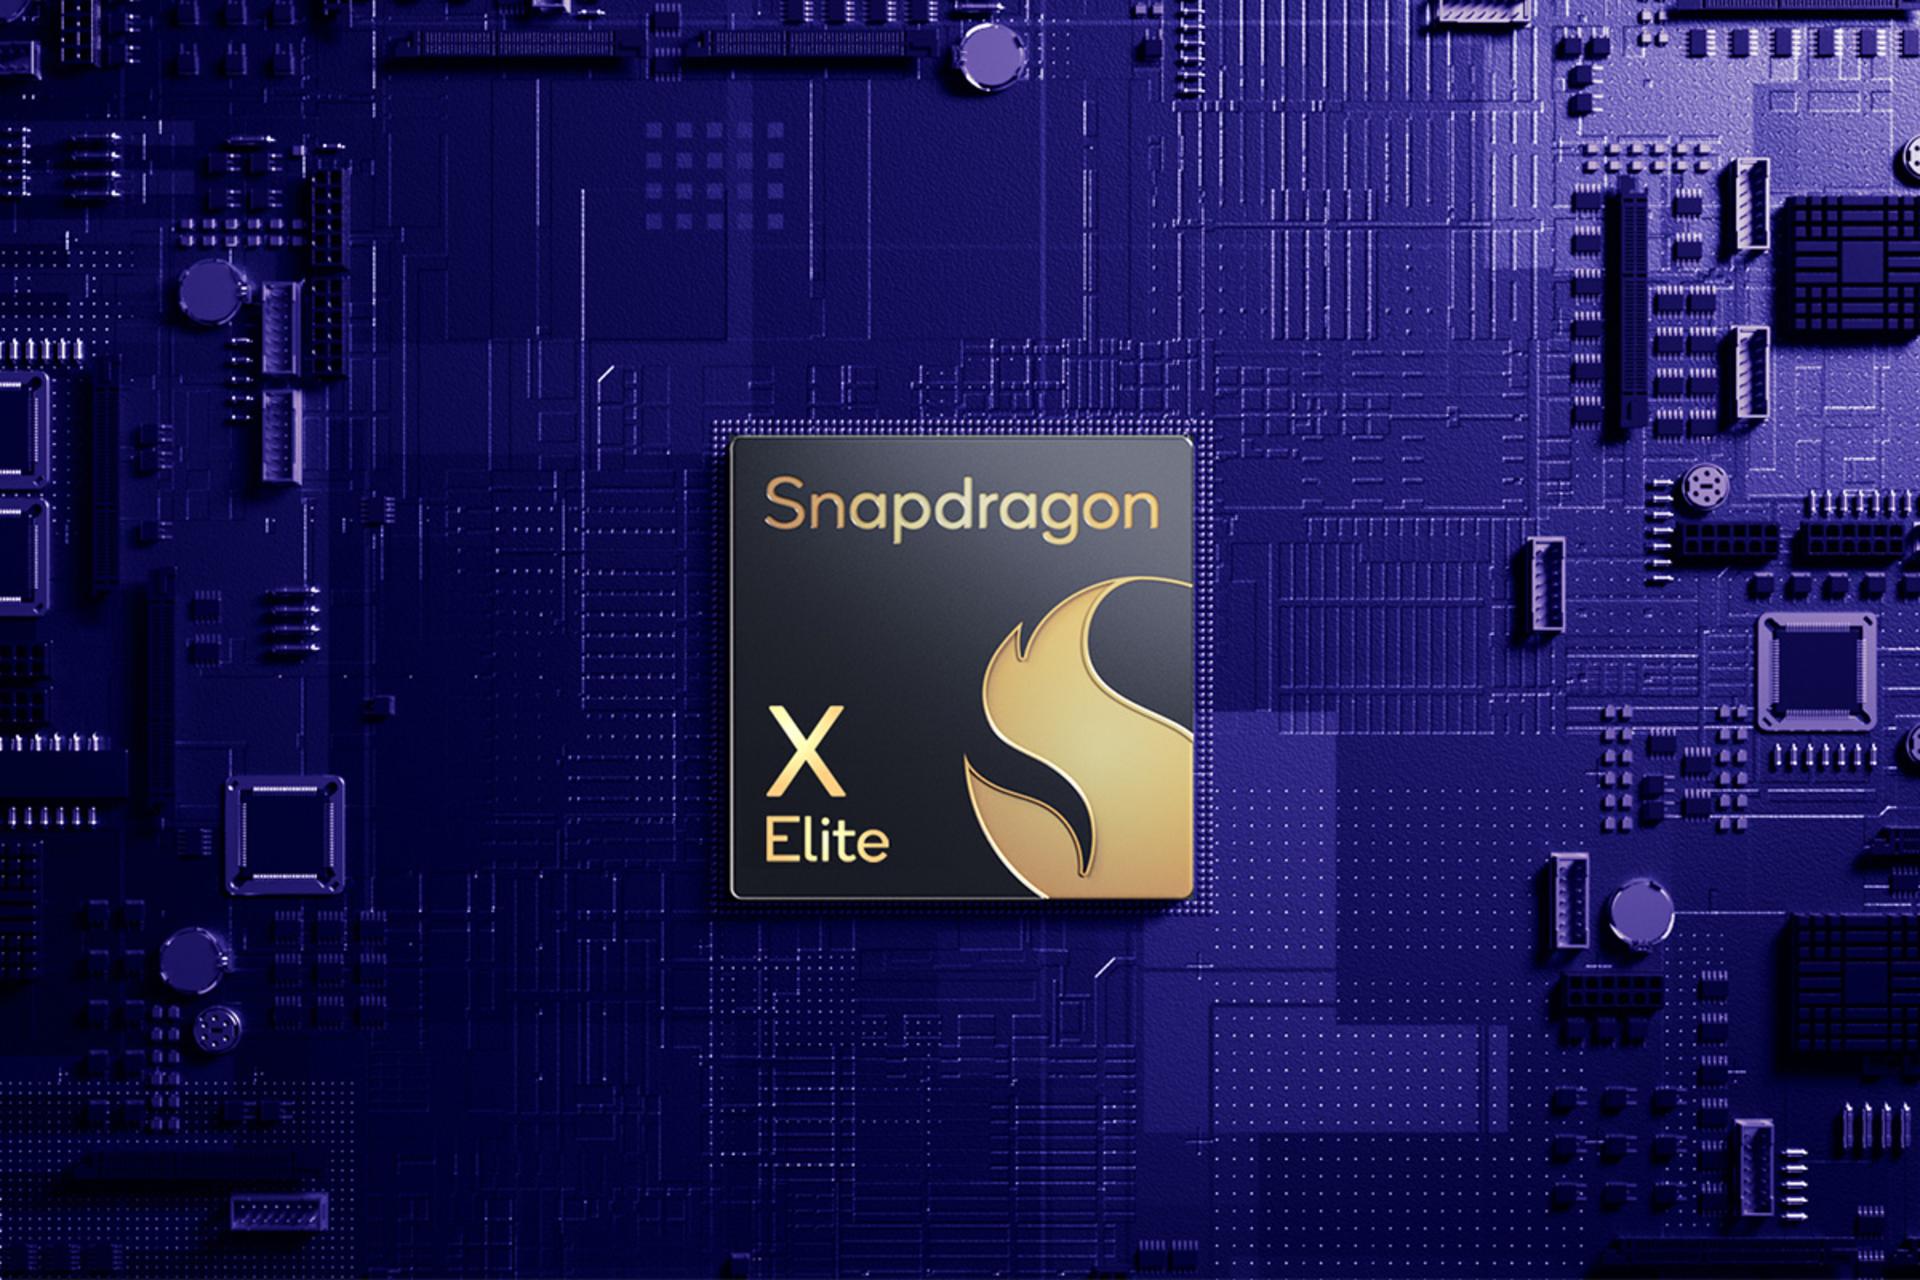 اسنپدراگون ایکس الیت / Snapdragon X Elite